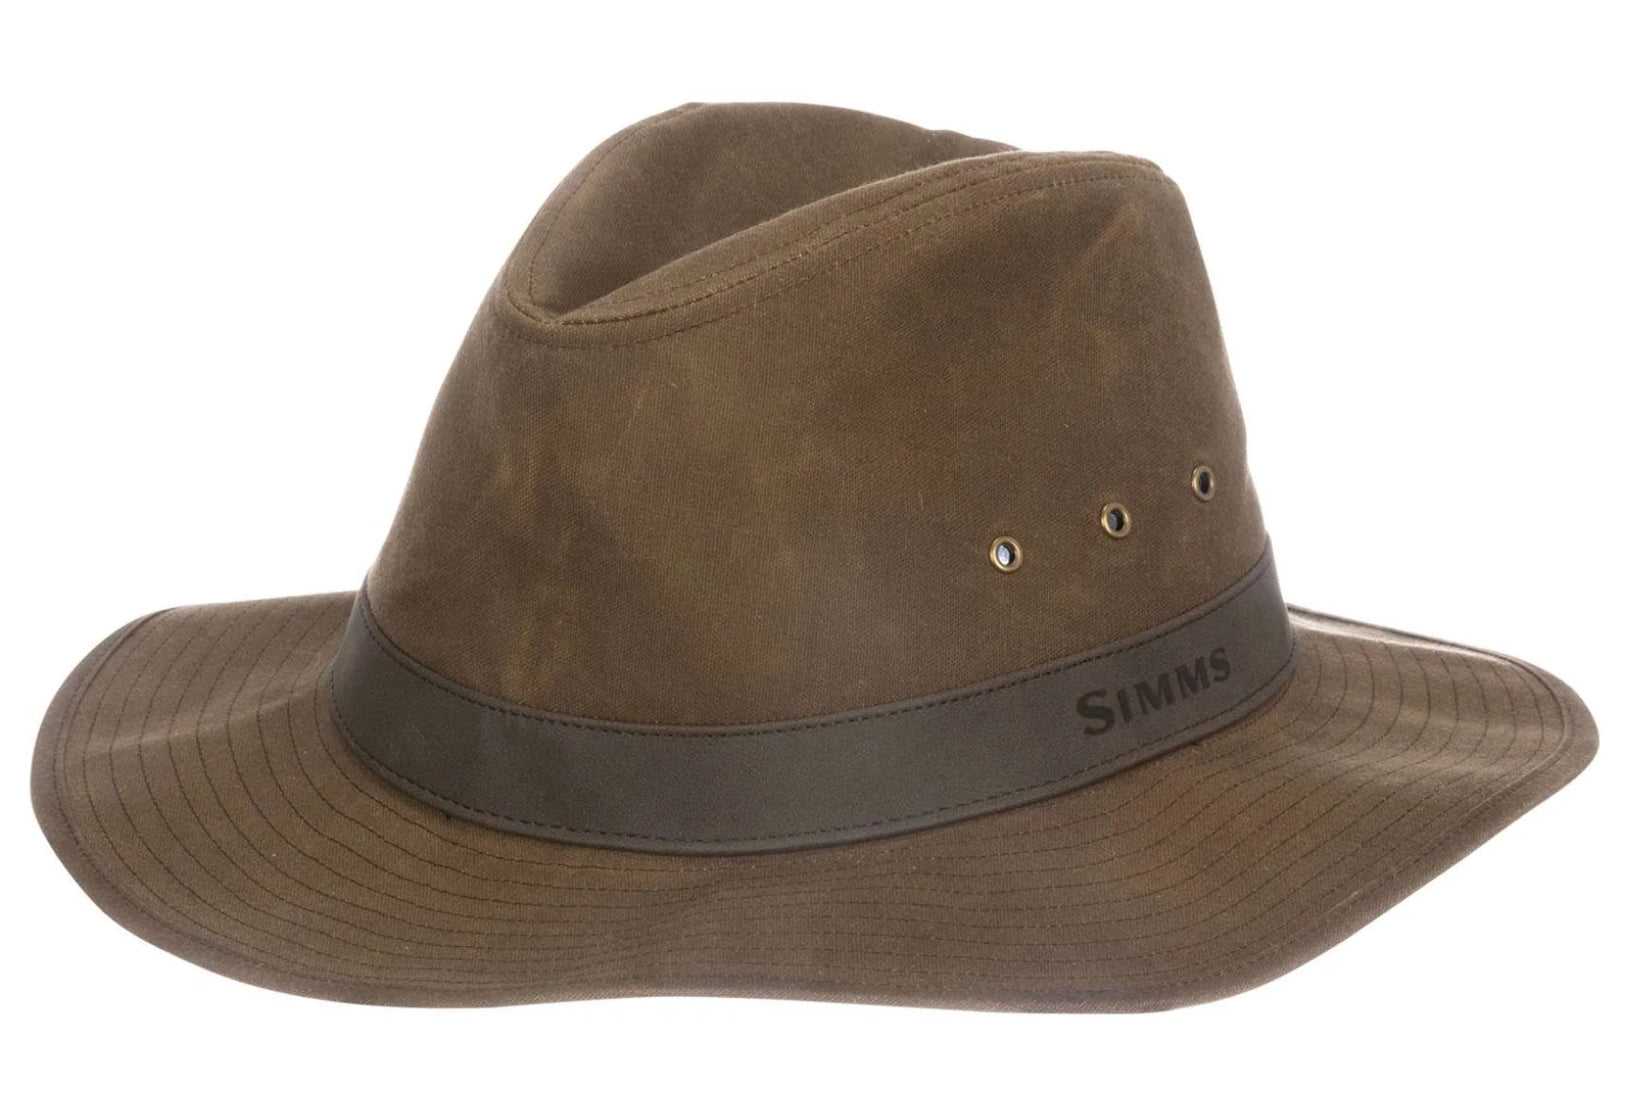 Simms Guide Classic Fishing Hat - LOTWSHQ